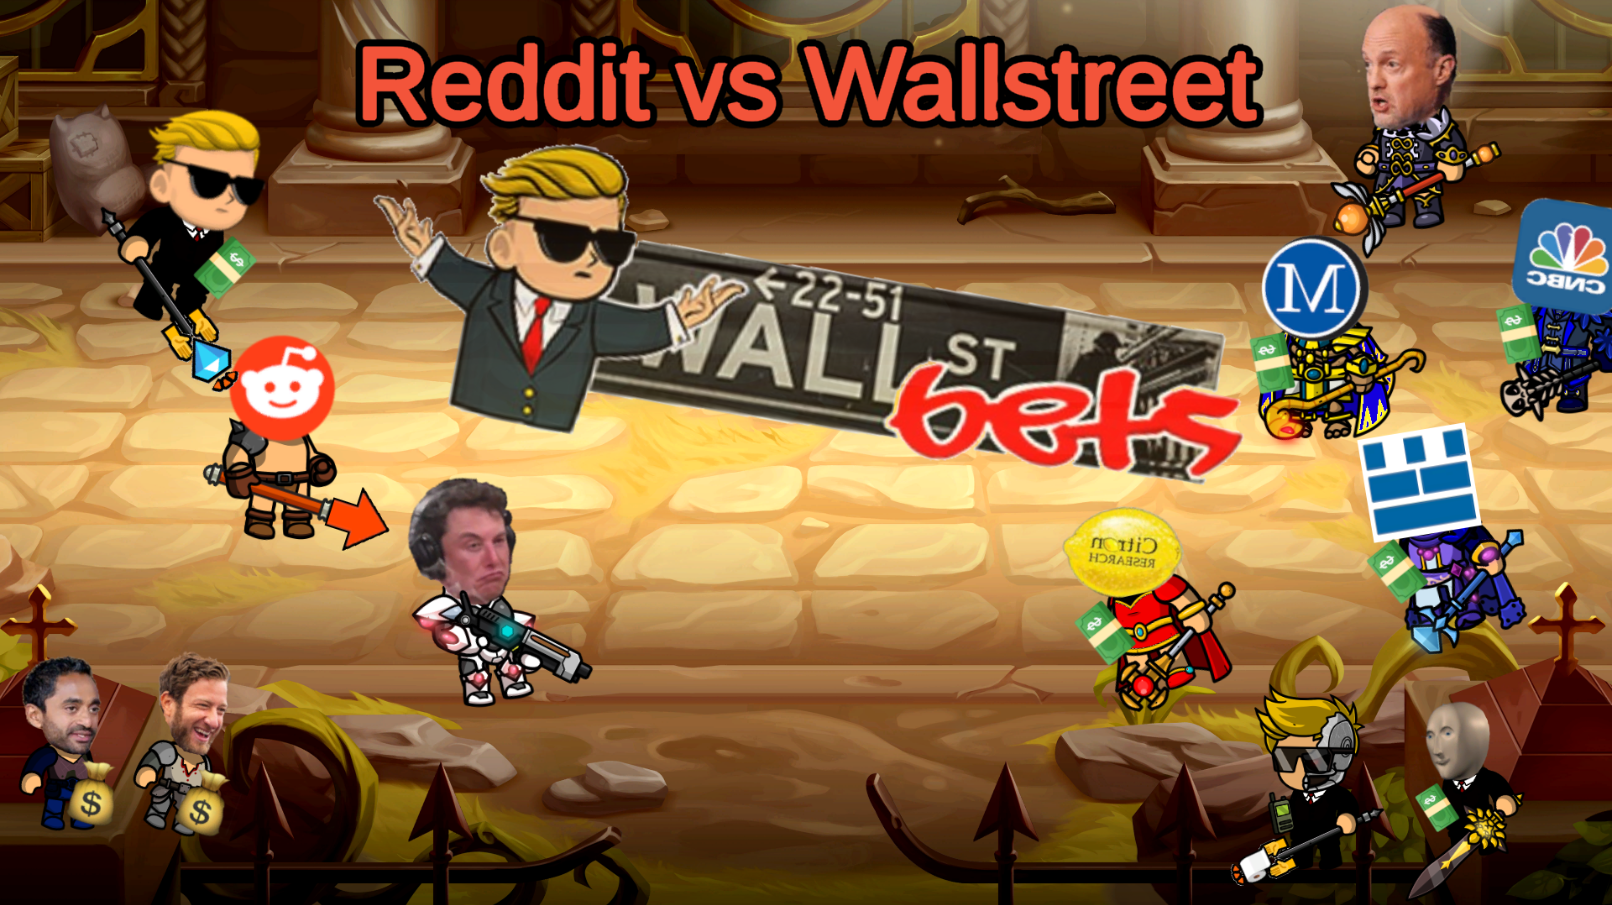 Reddit vs. Wallstreet!